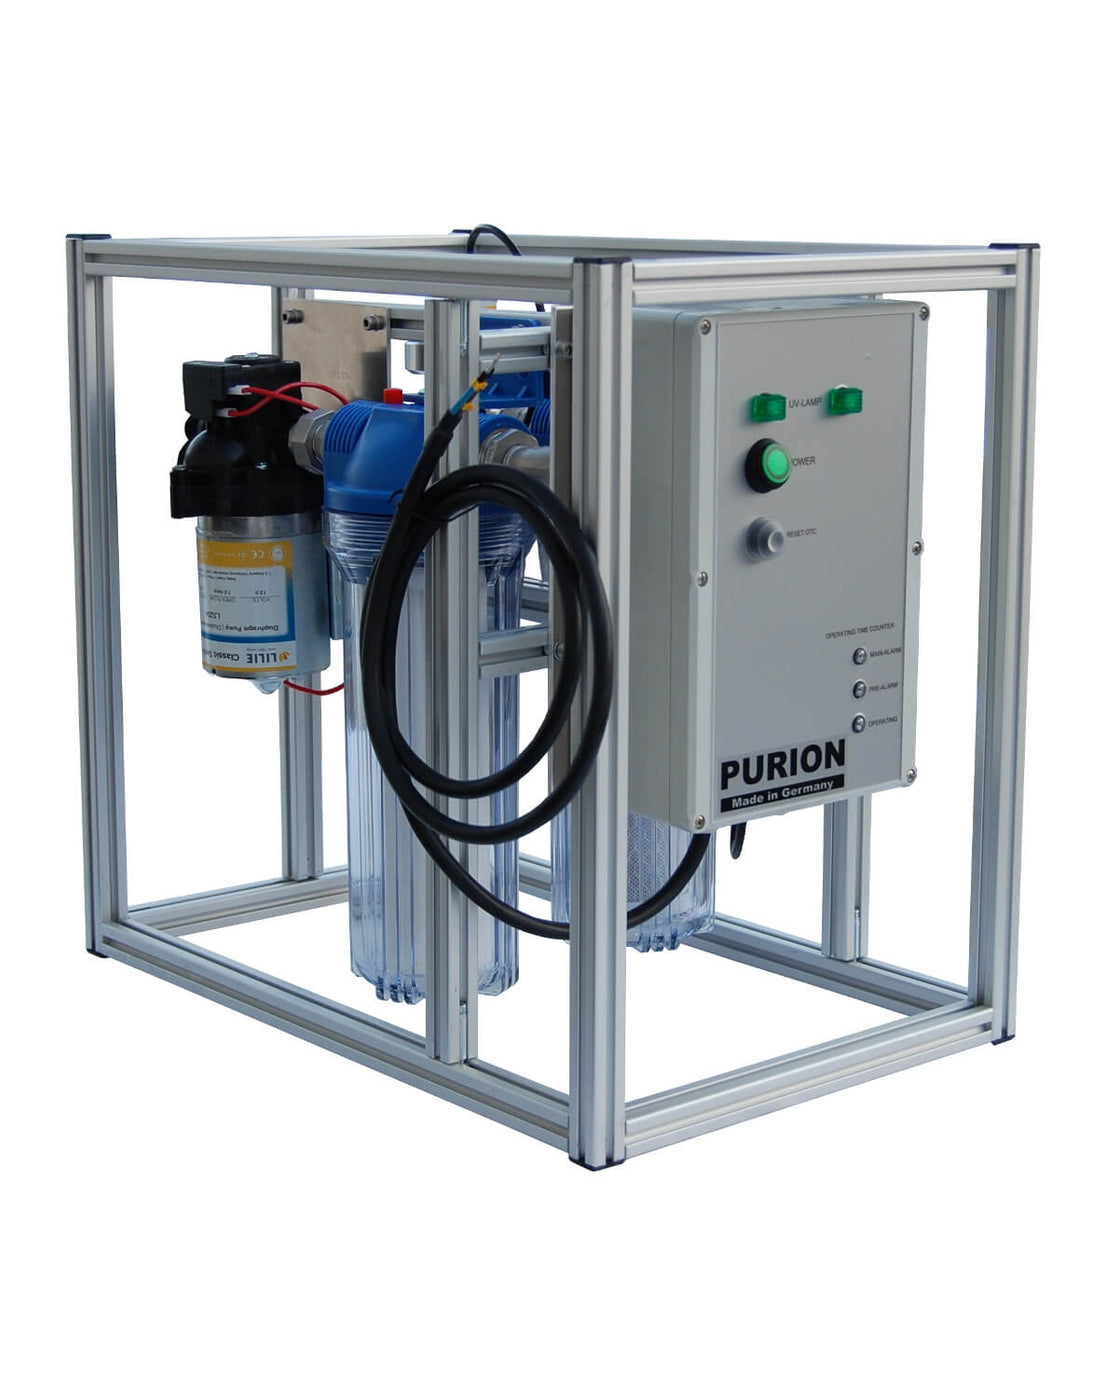 Das Kompaktsystem active der PURION GmbH ist eine kompakte und effiziente Wasseraufbereitungslösung, die mithilfe einer UV-C-Anlage eine hochwertige Wasserreinigung in der gesamten Wasseraufbereitungskette gewährleistet.